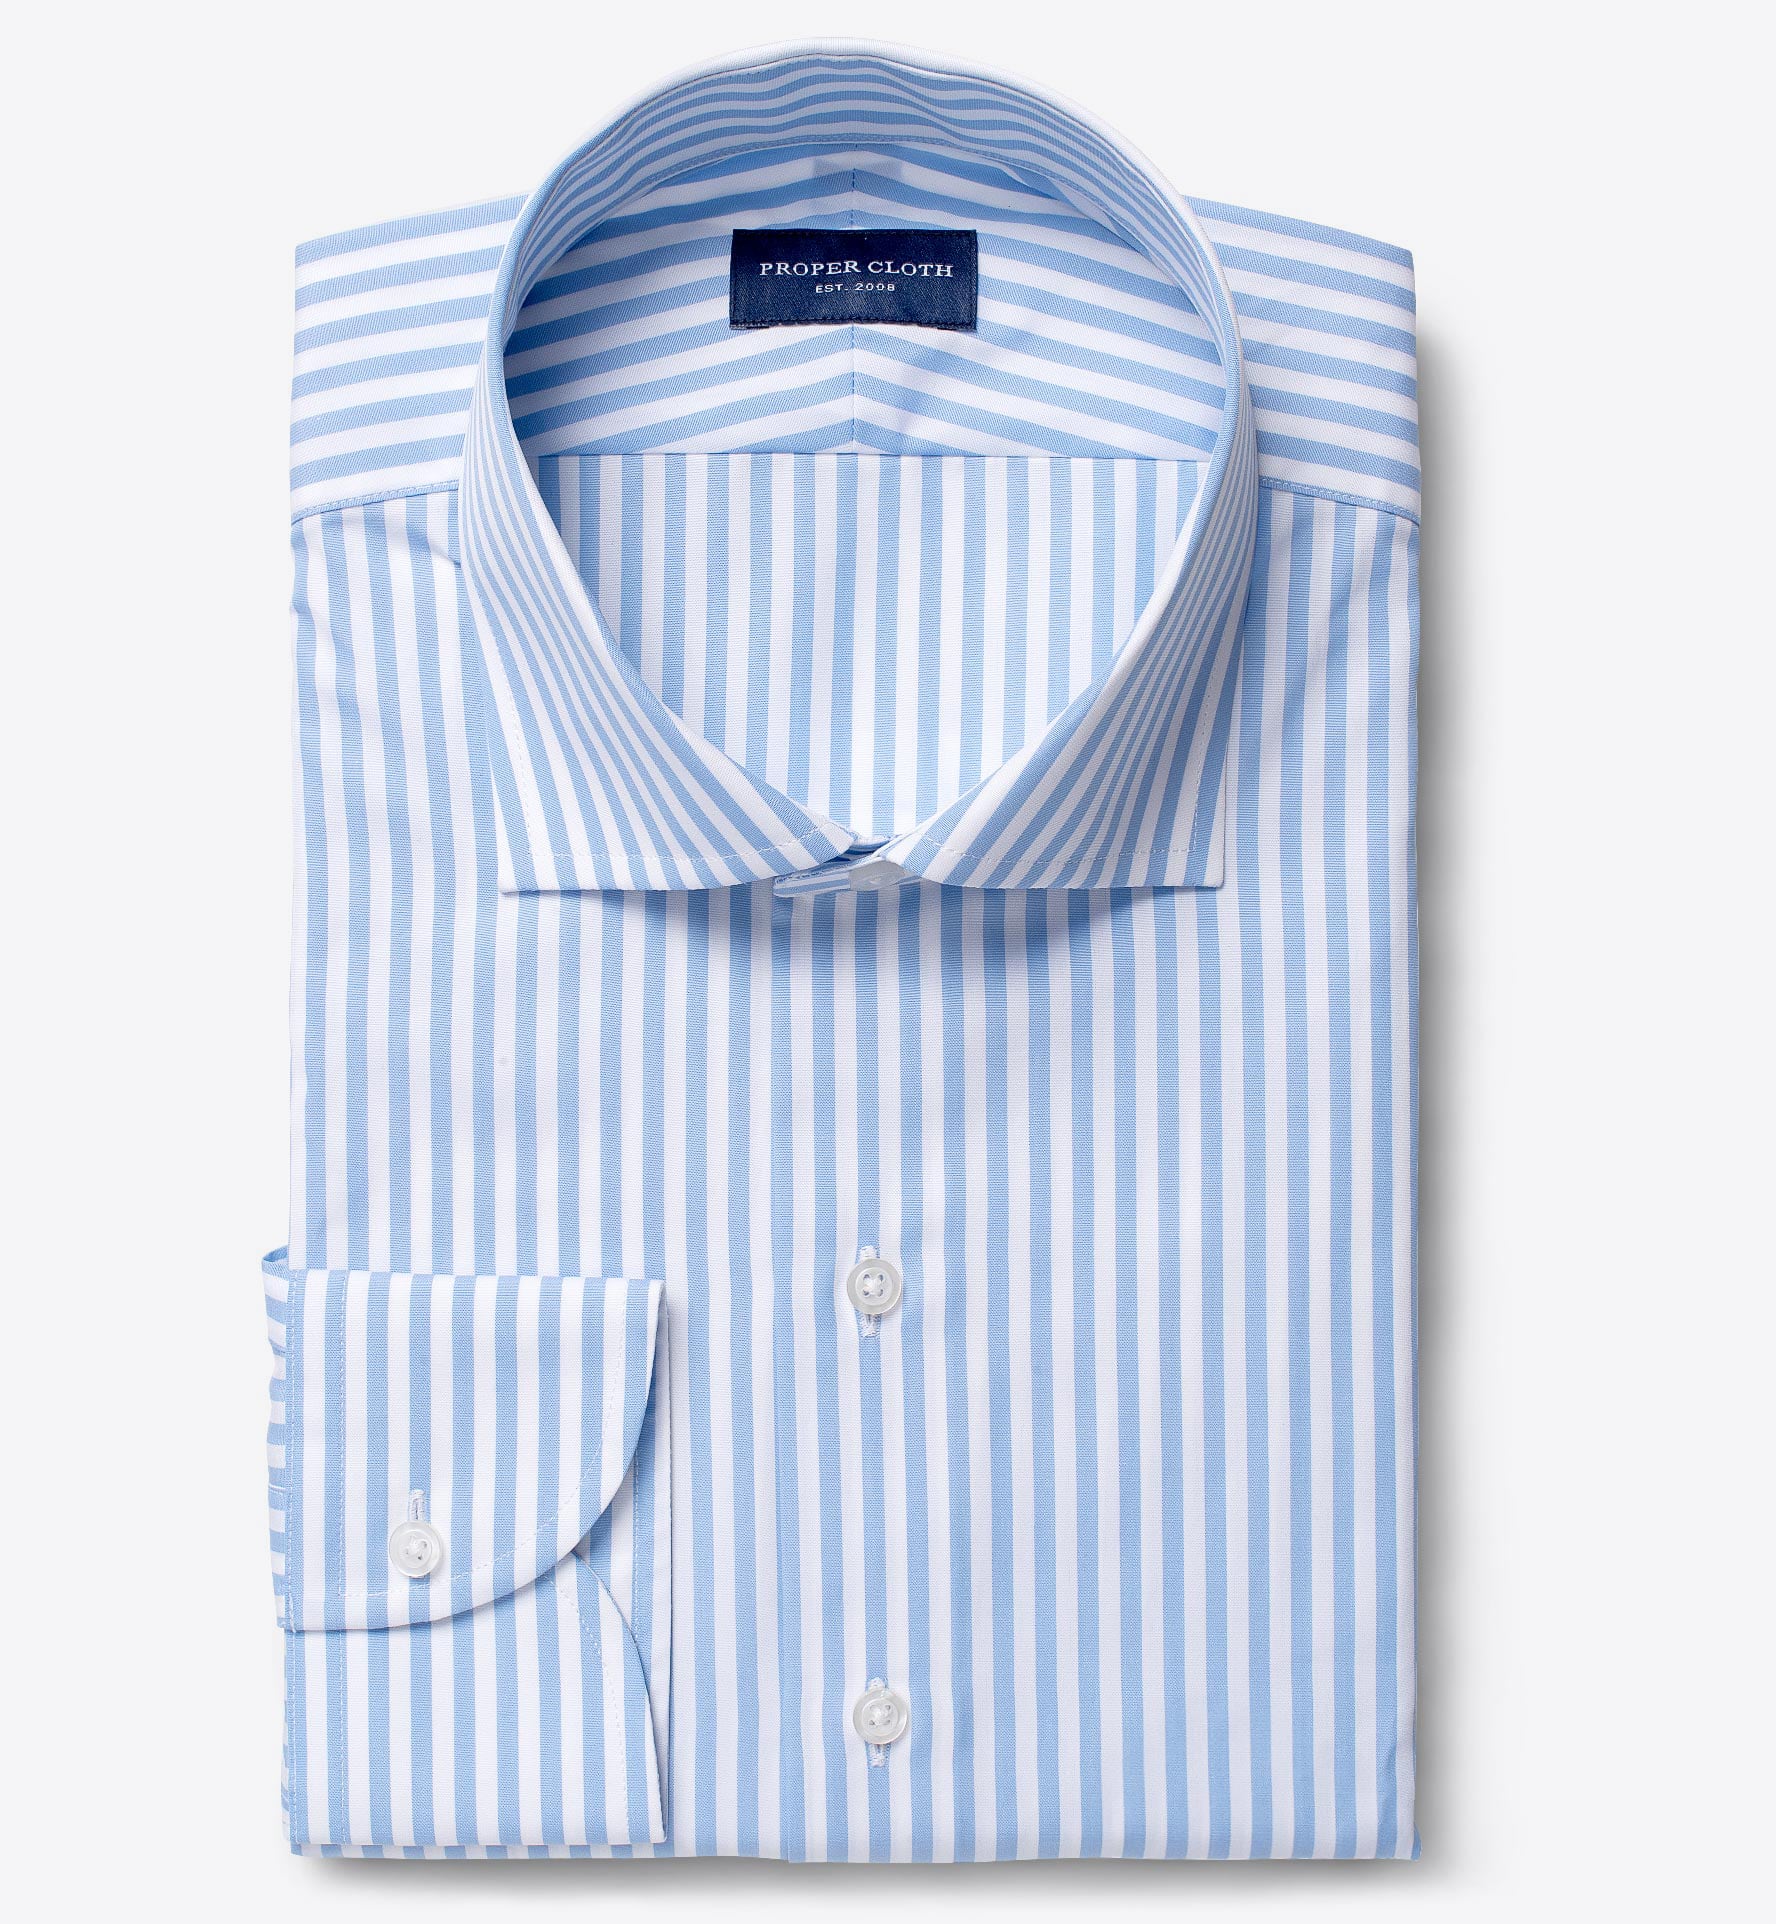 Stanton 120s Light Blue Wide Bengal Stripe Men's Dress Shirt Shirt